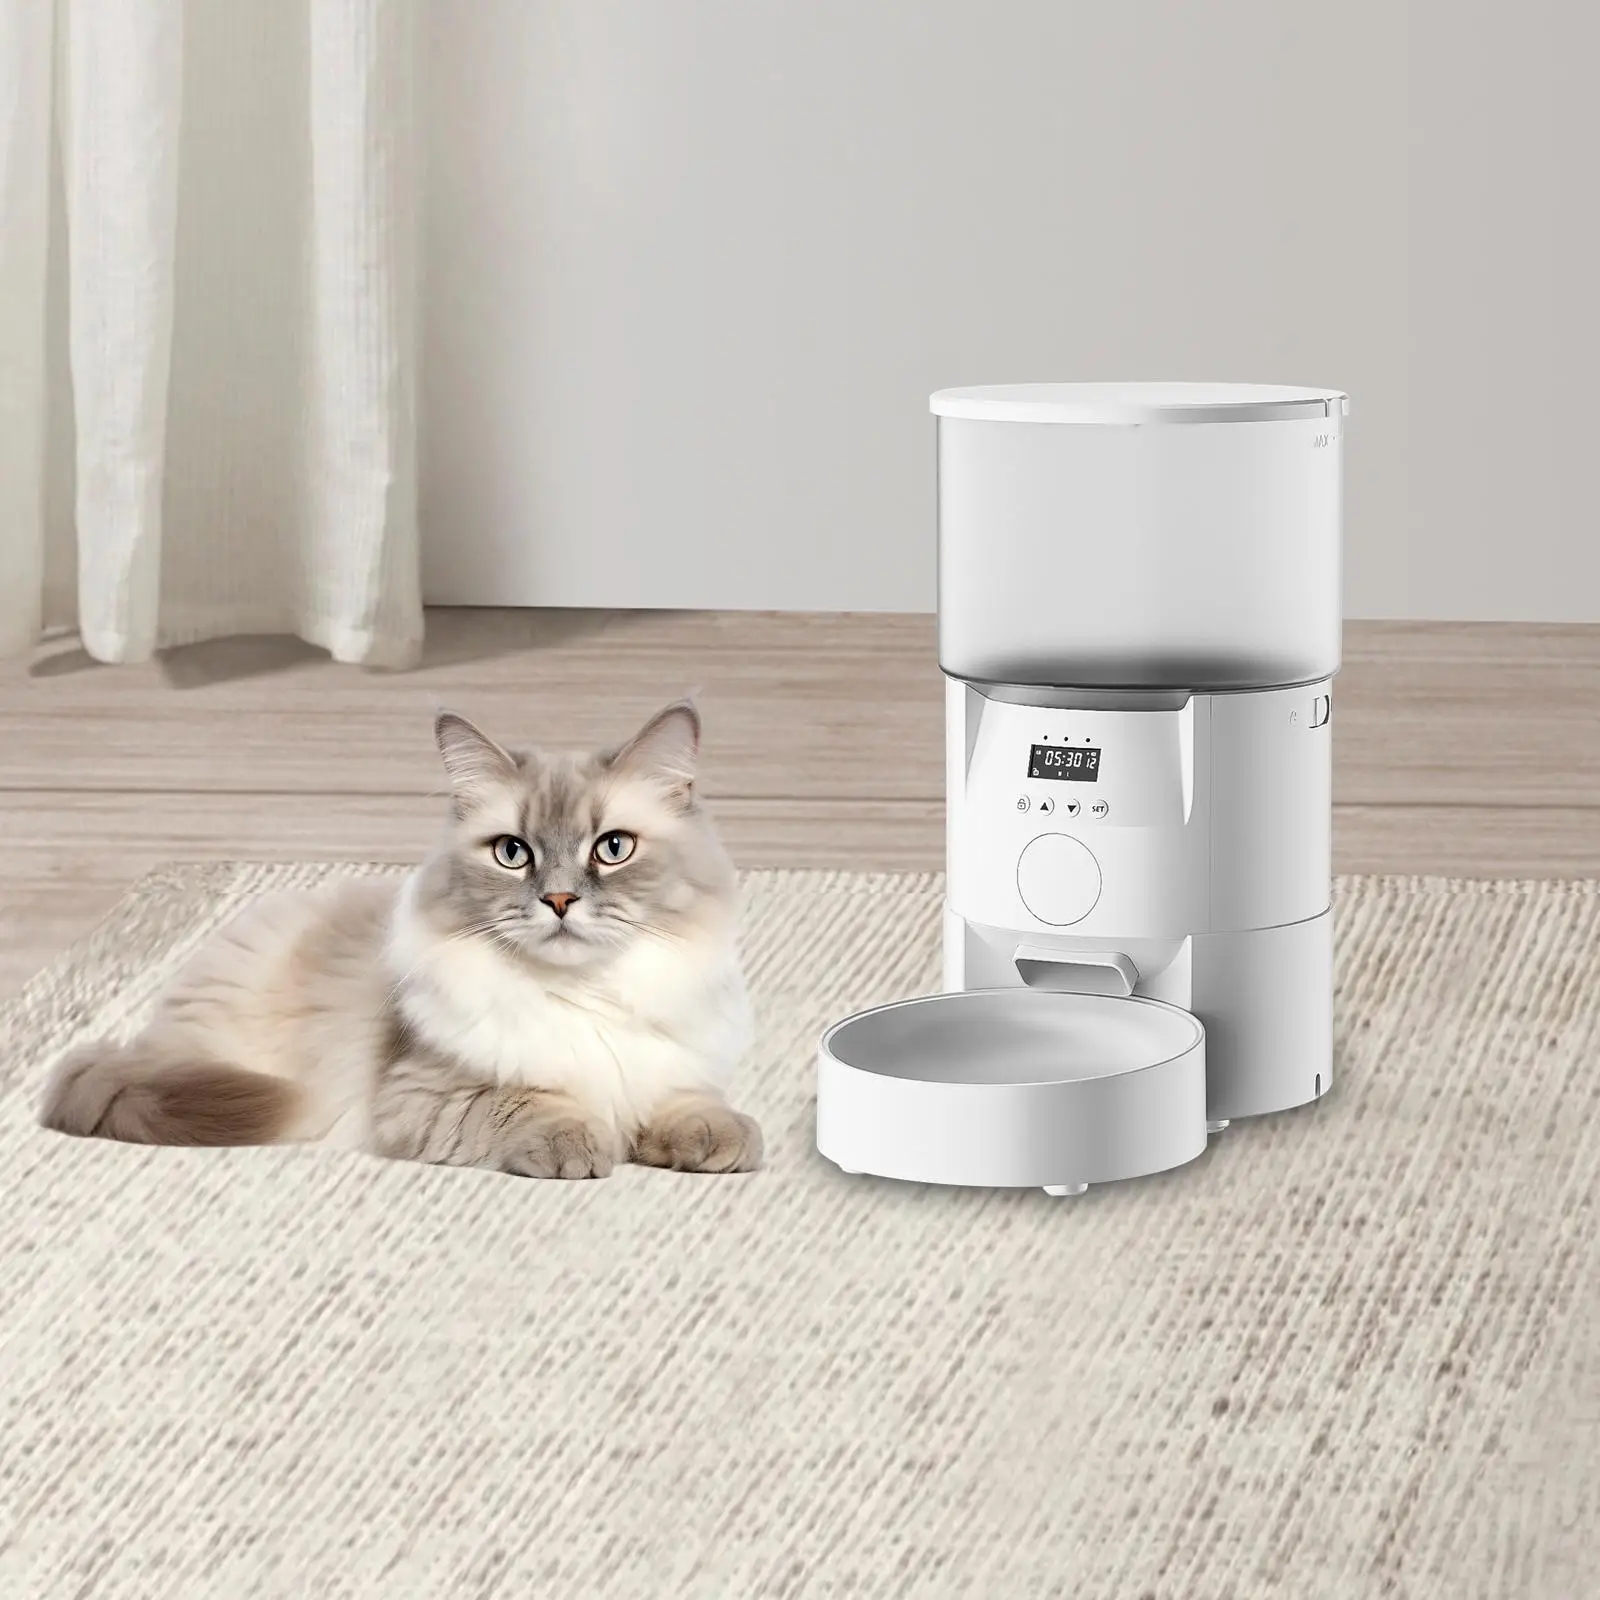 

Автоматическая кормушка для кошки 1-4 приема еды в день, 10S прибор для вызова пищи с кнопкой управления таймером, кормушка для кошек, для сухой еды, питомцев, собак, кошек, вилка стандарта США